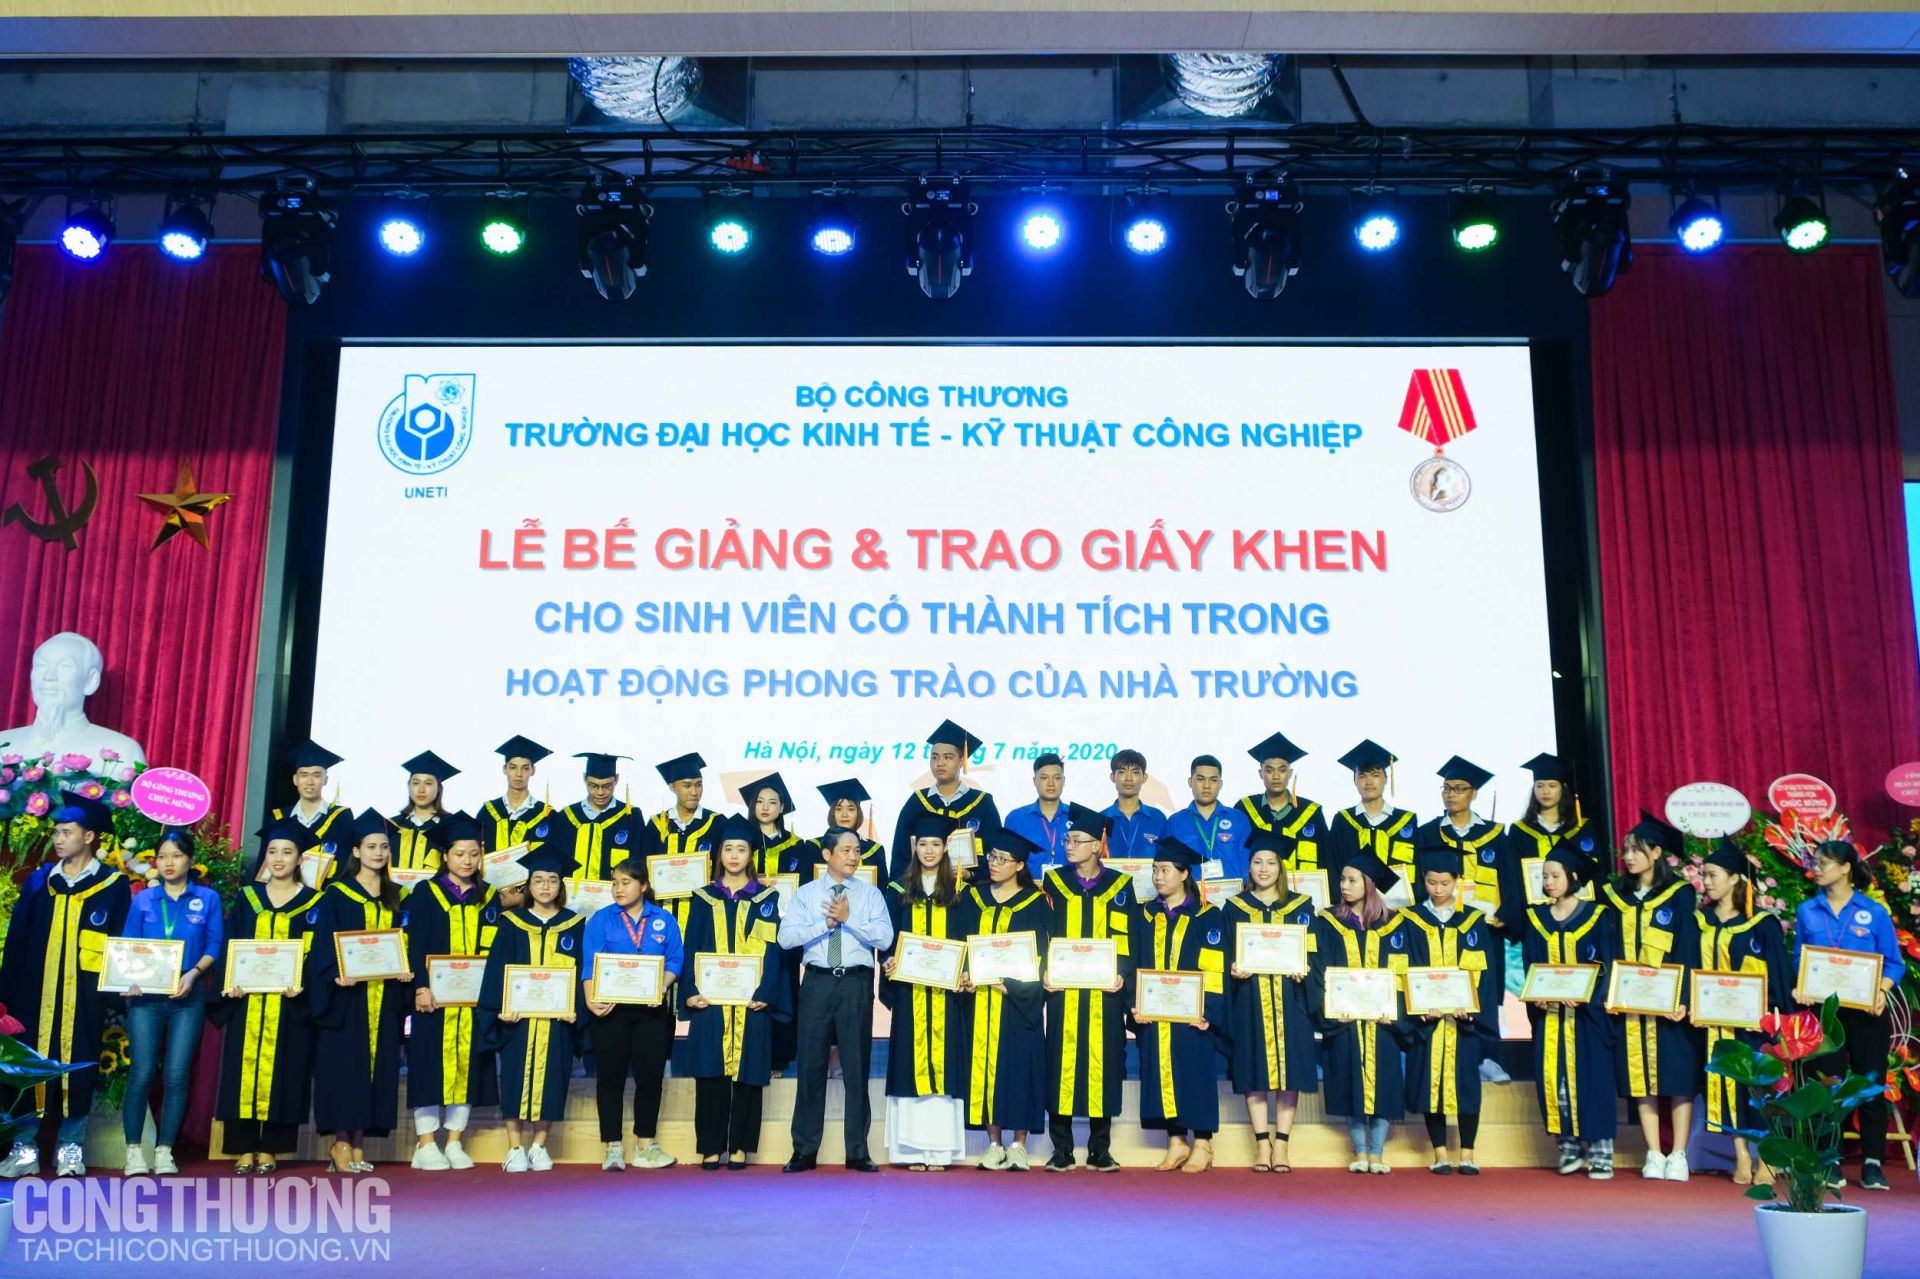 Ông Nguyễn Hoàng Giang - Phó Vụ trưởng Vụ Kế hoạch, Bộ Công Thương trao Giấy khen cho các sinh viên UNETI có nhiều đóng góp trong hoạt động phong trào của Nhà trường